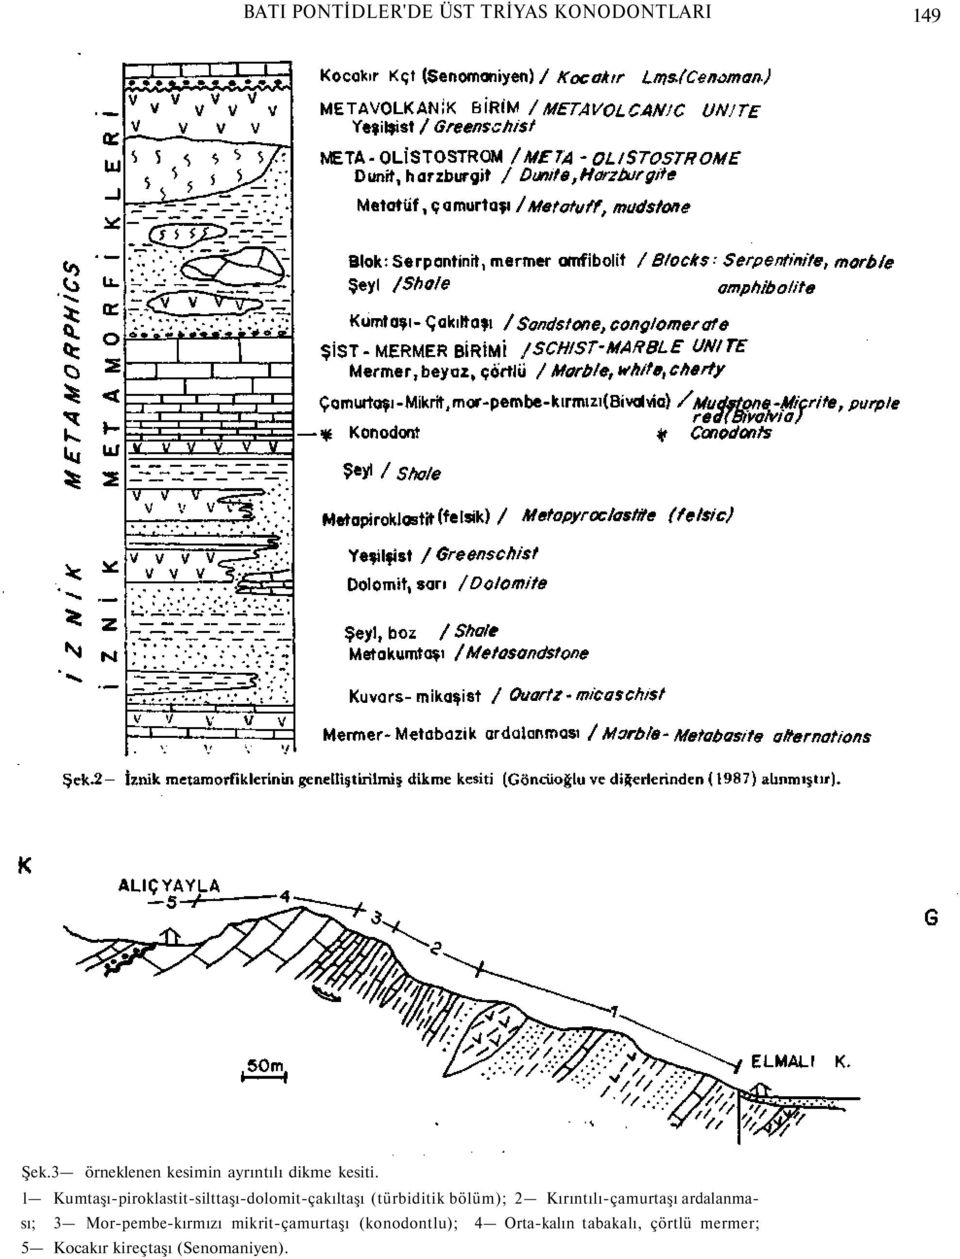 l Kumtaşı-piroklastit-silttaşı-dolomit-çakıltaşı (türbiditik bölüm); 2